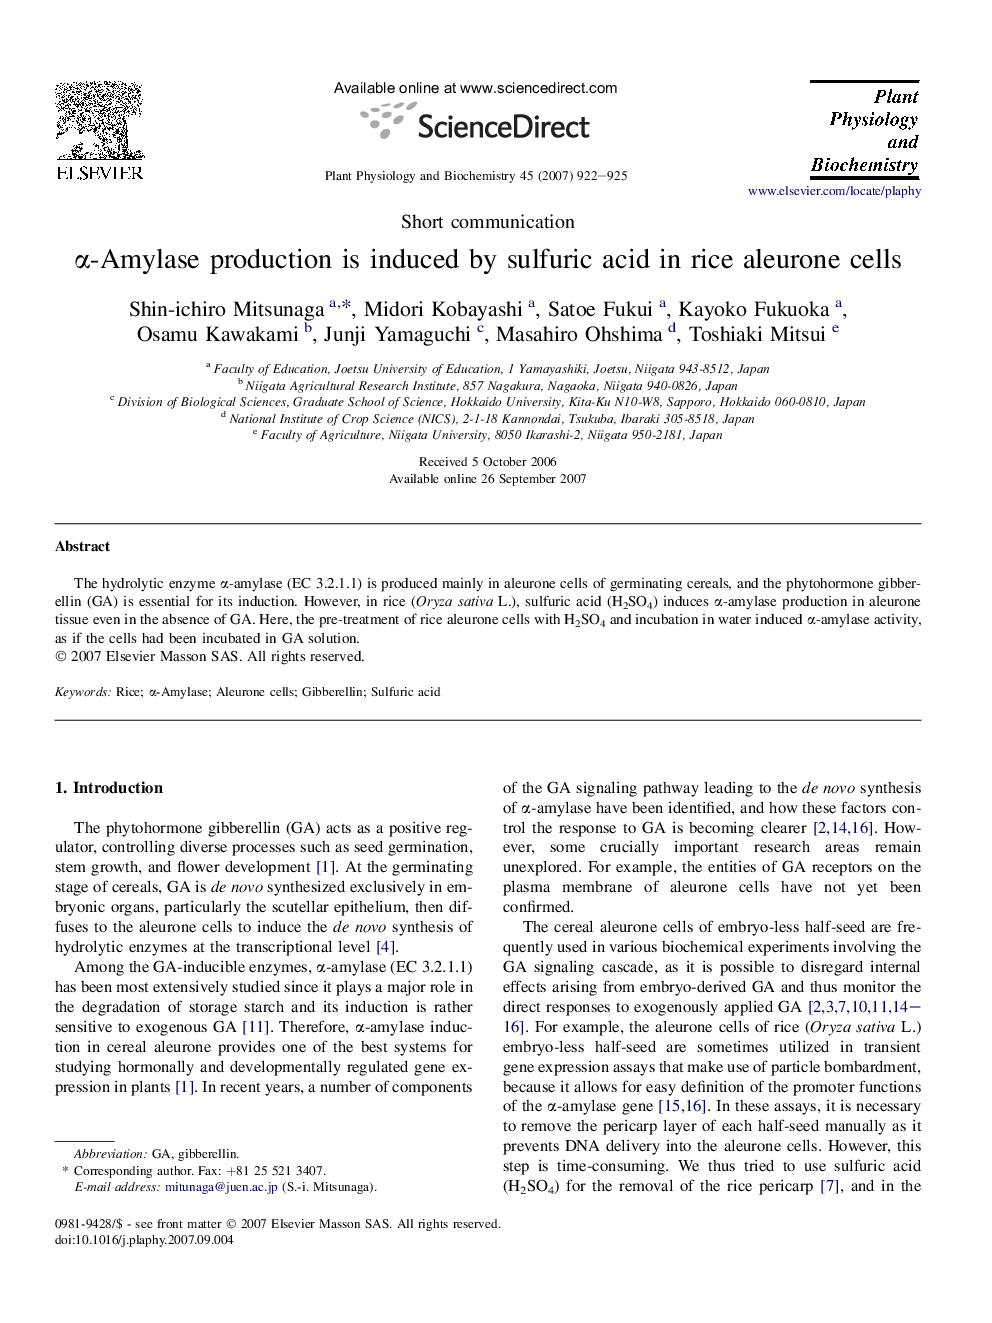 α-Amylase production is induced by sulfuric acid in rice aleurone cells